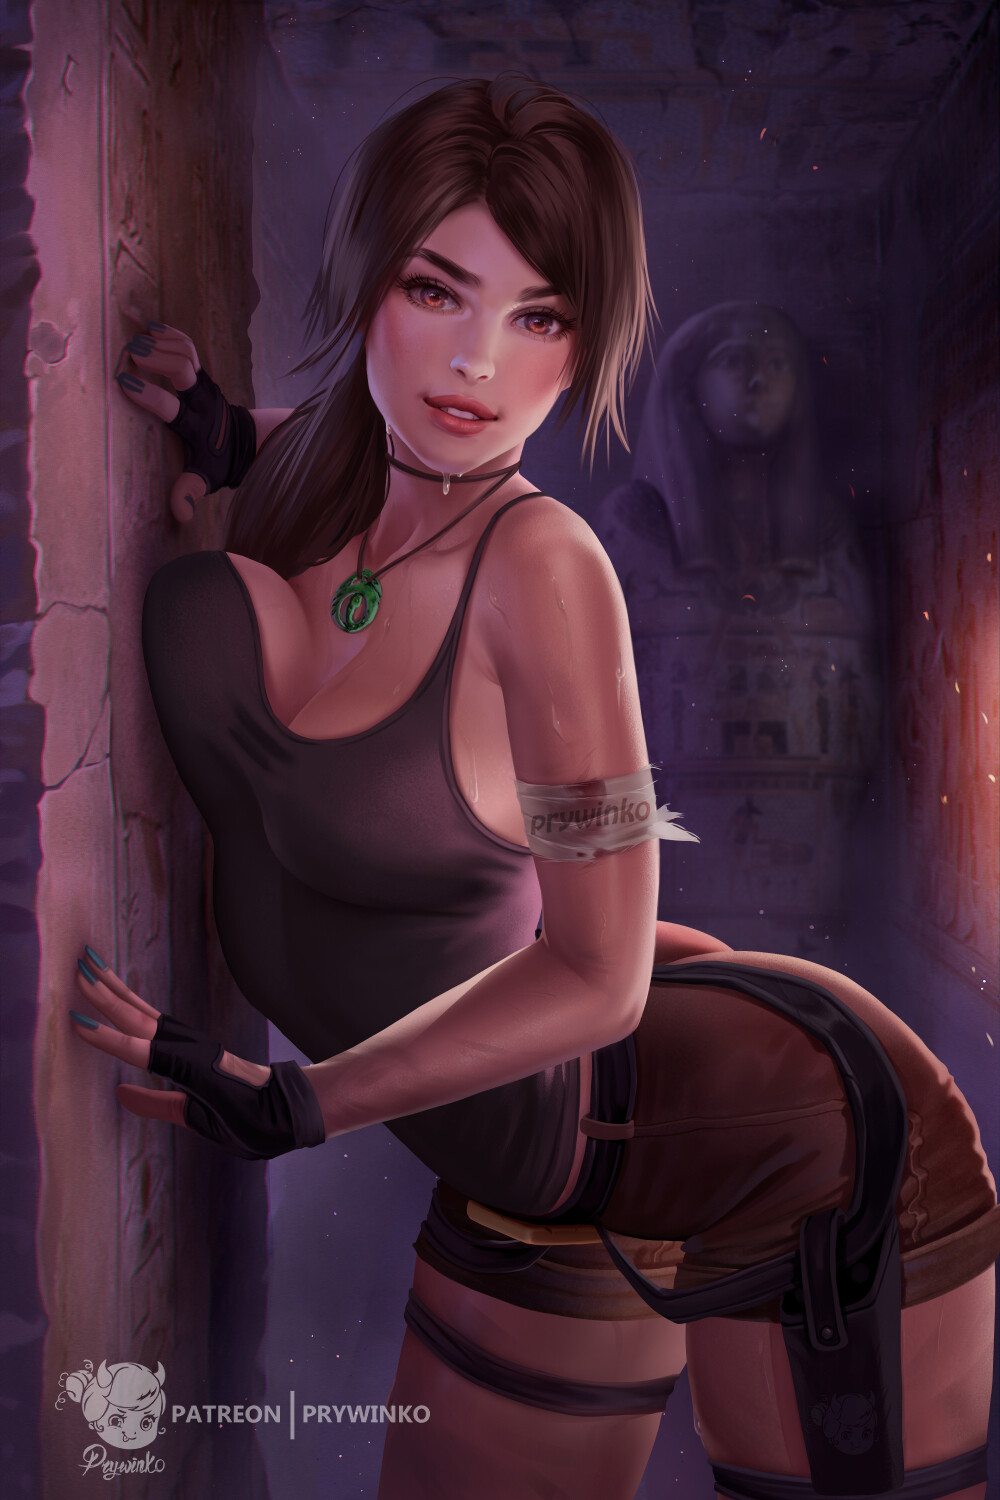 Classic Lara Croft.